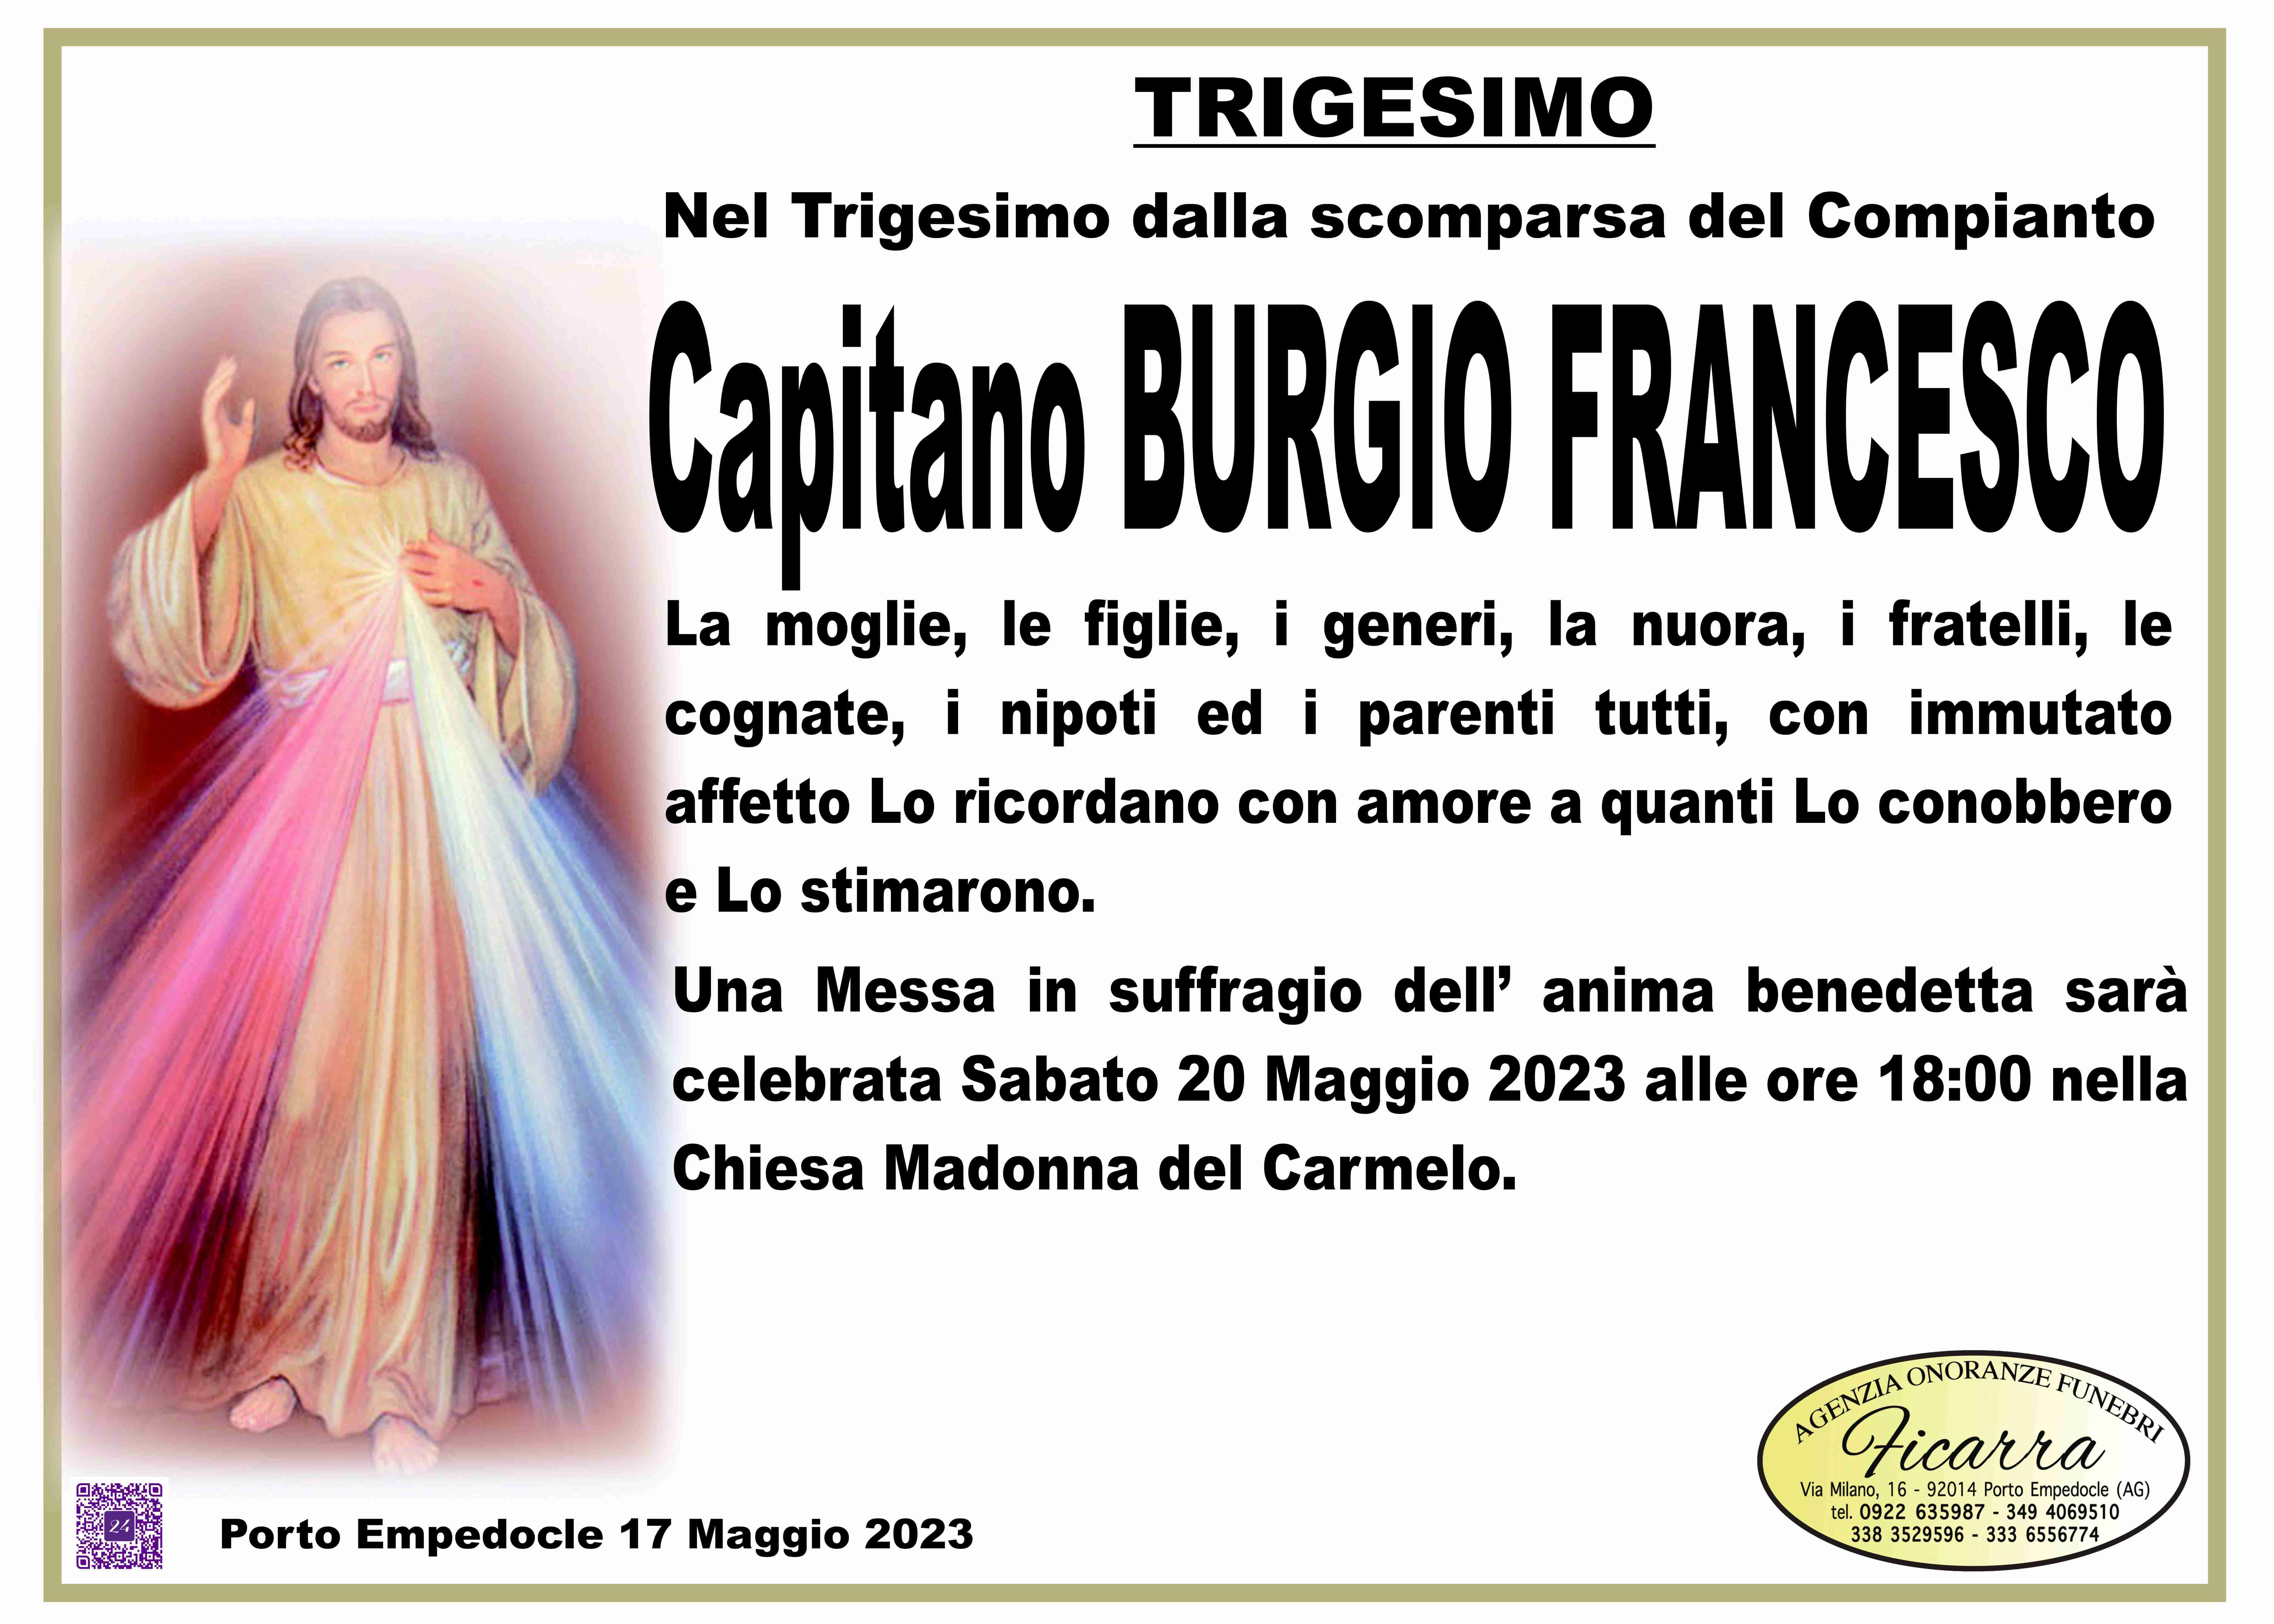 Francesco Burgio